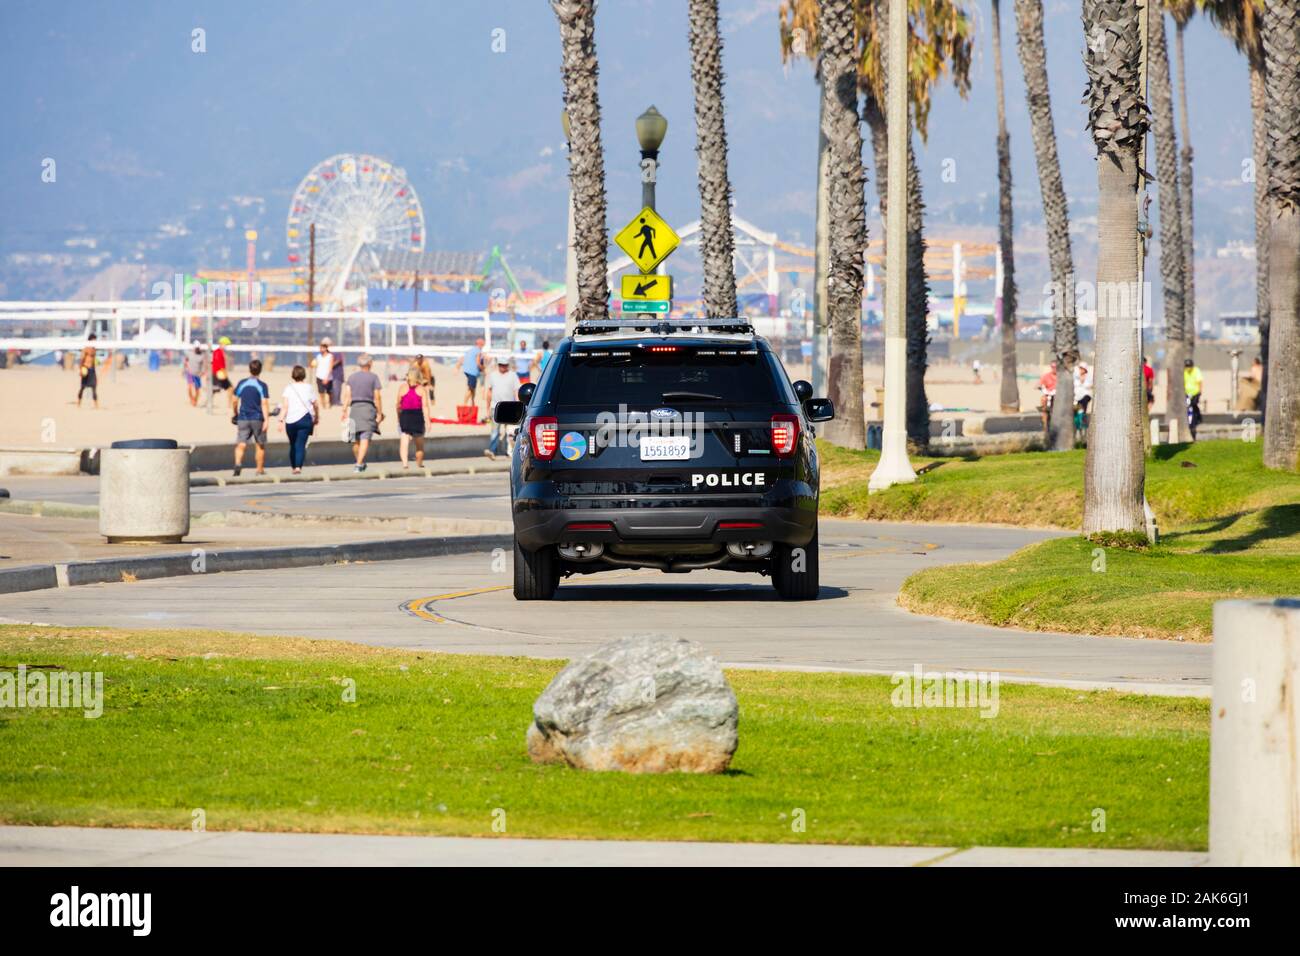 Santa Monica Police Department Ford Streifenwagen auf der Beach Road, Santa Monica, Los Angeles, Kalifornien, Vereinigte Staaten von Amerika Stockfoto